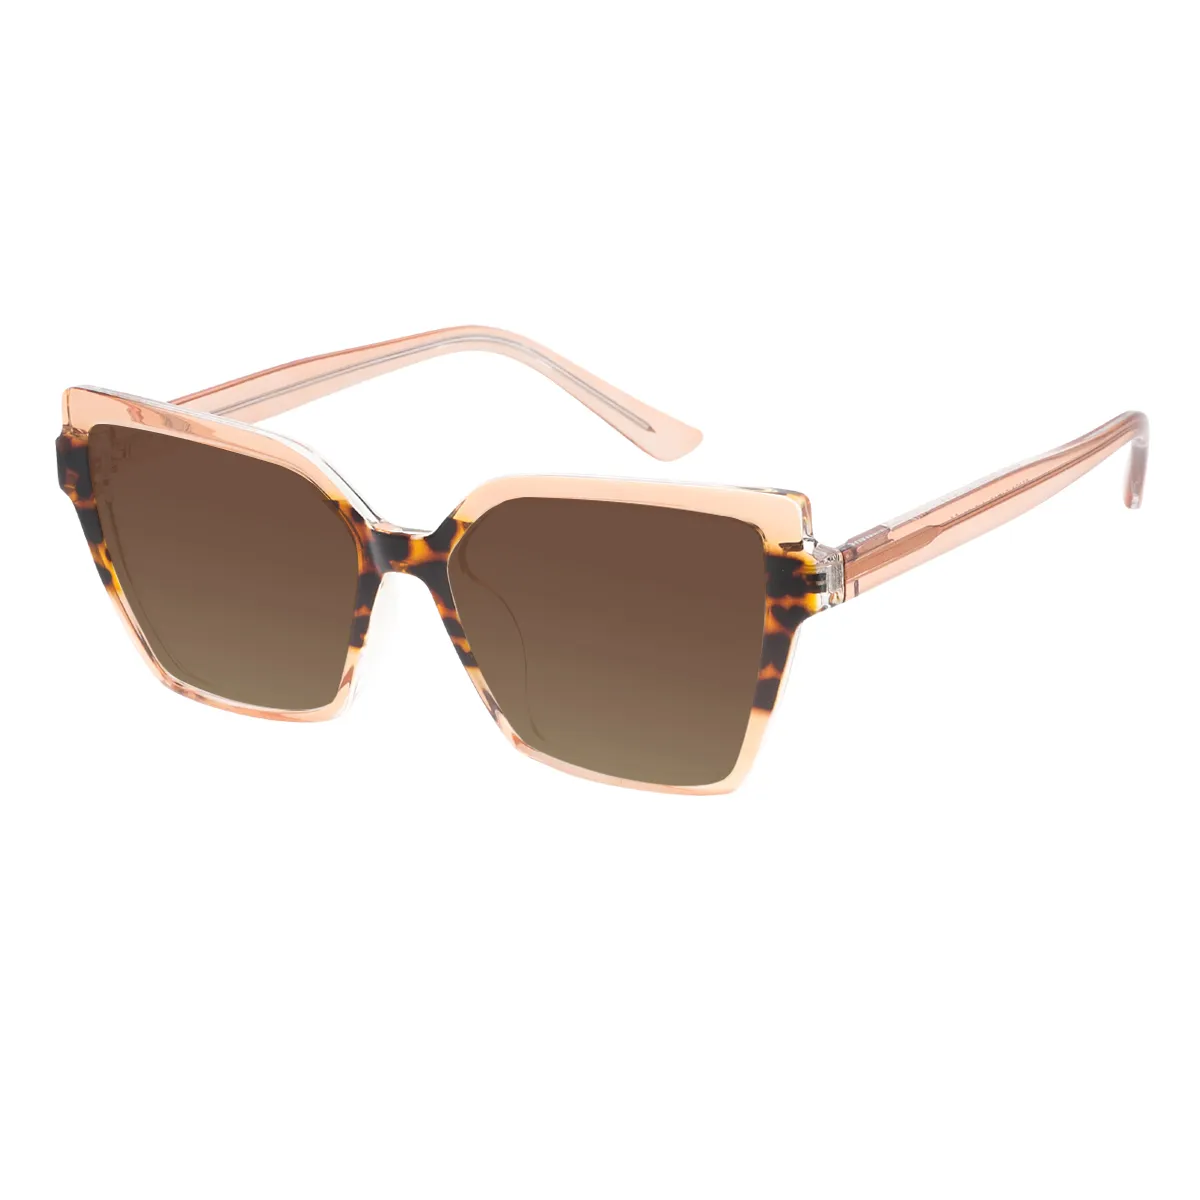 Vesta - Square Brown Sunglasses for Women